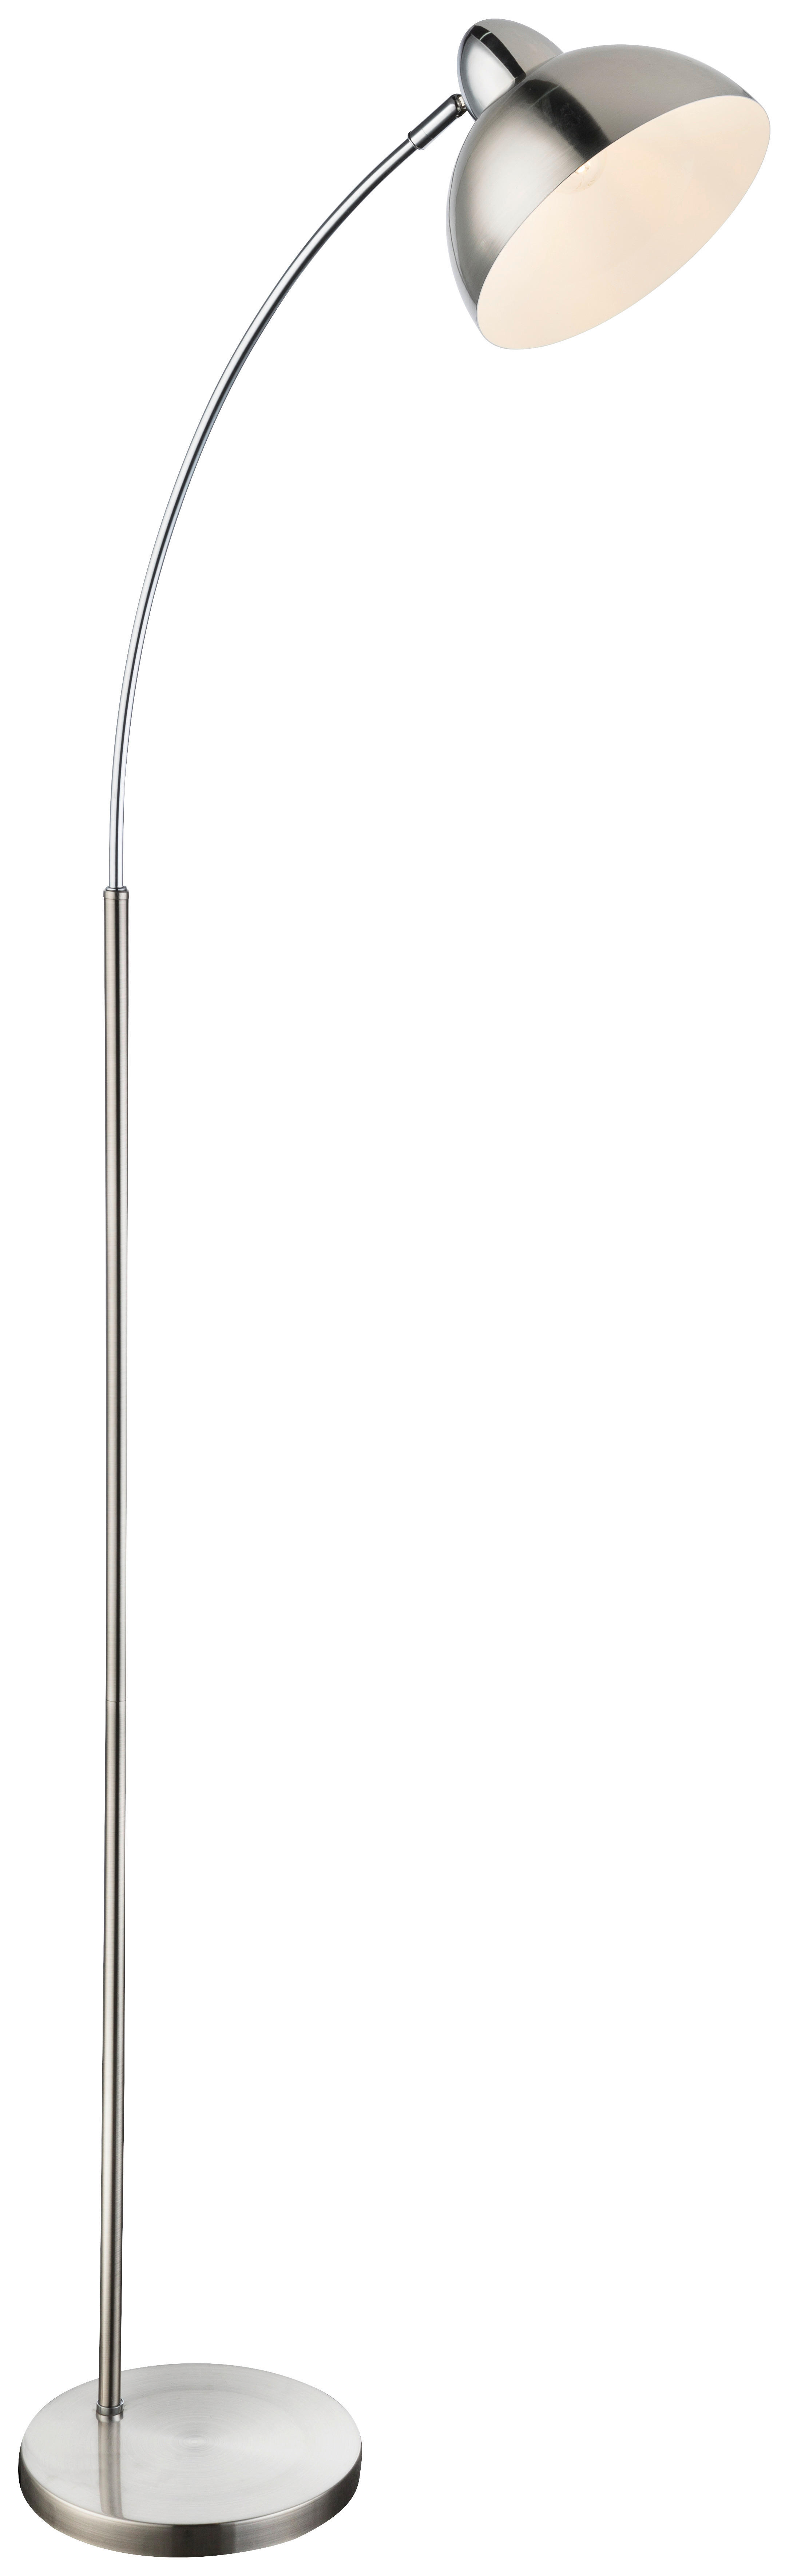 BOGENLEUCHTE 50/23/155 cm    - Weiß/Nickelfarben, Trend, Metall (50/23/155cm) - Globo